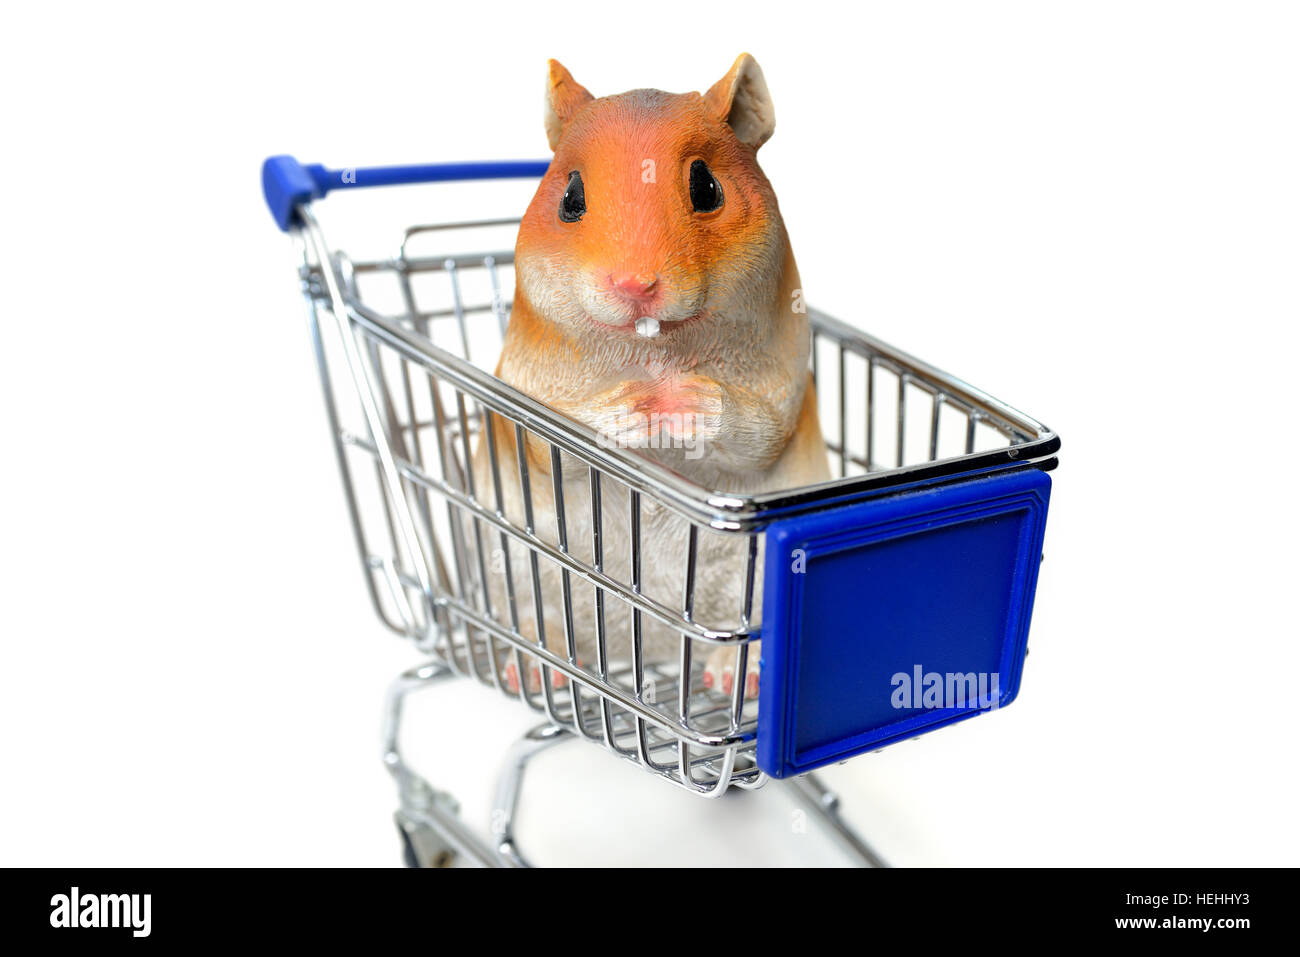 Hamsterfigur im Einkaufswagen, Symbolfoto Hamsterkaeufe Stock Photo